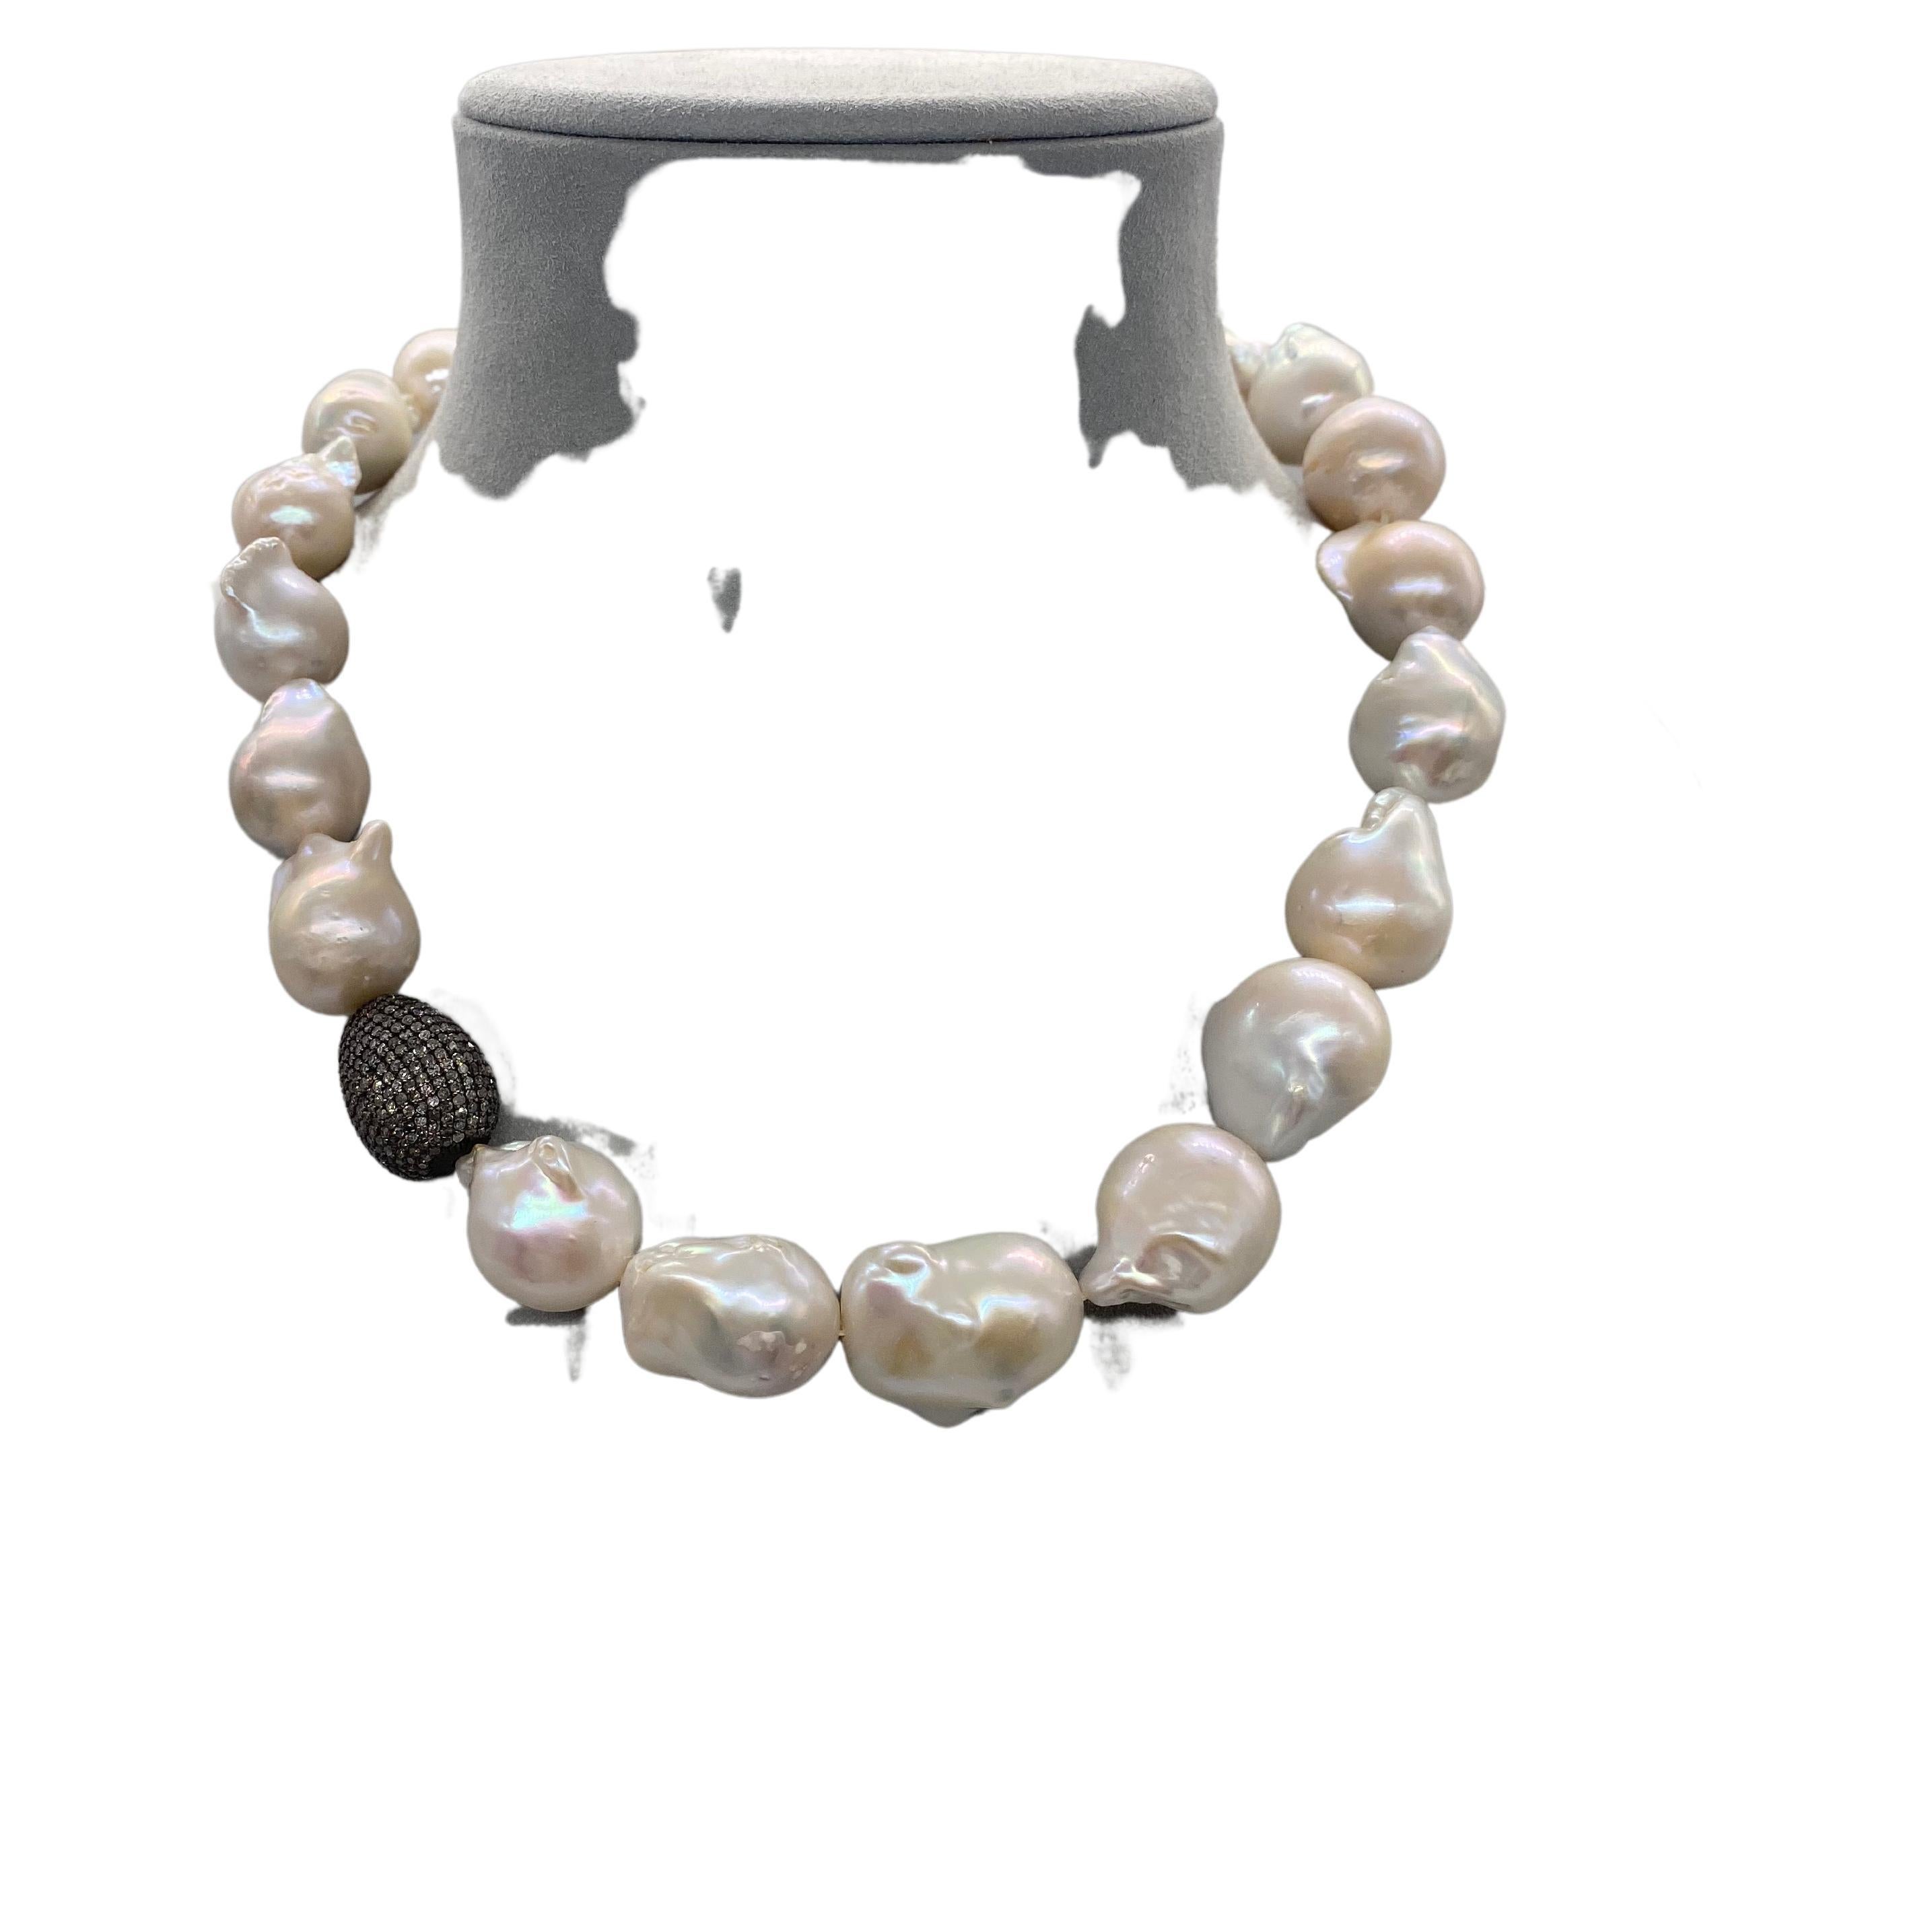 Barocke Perlen stammen aus der Südsee, wo die Natur unter Wasser Schätze von beeindruckender Schönheit hervorbringt. Ihre weiche, organische, unregelmäßige Form verleiht diesen Halsketten eine faszinierende Dimension. Die schillernden Perlen